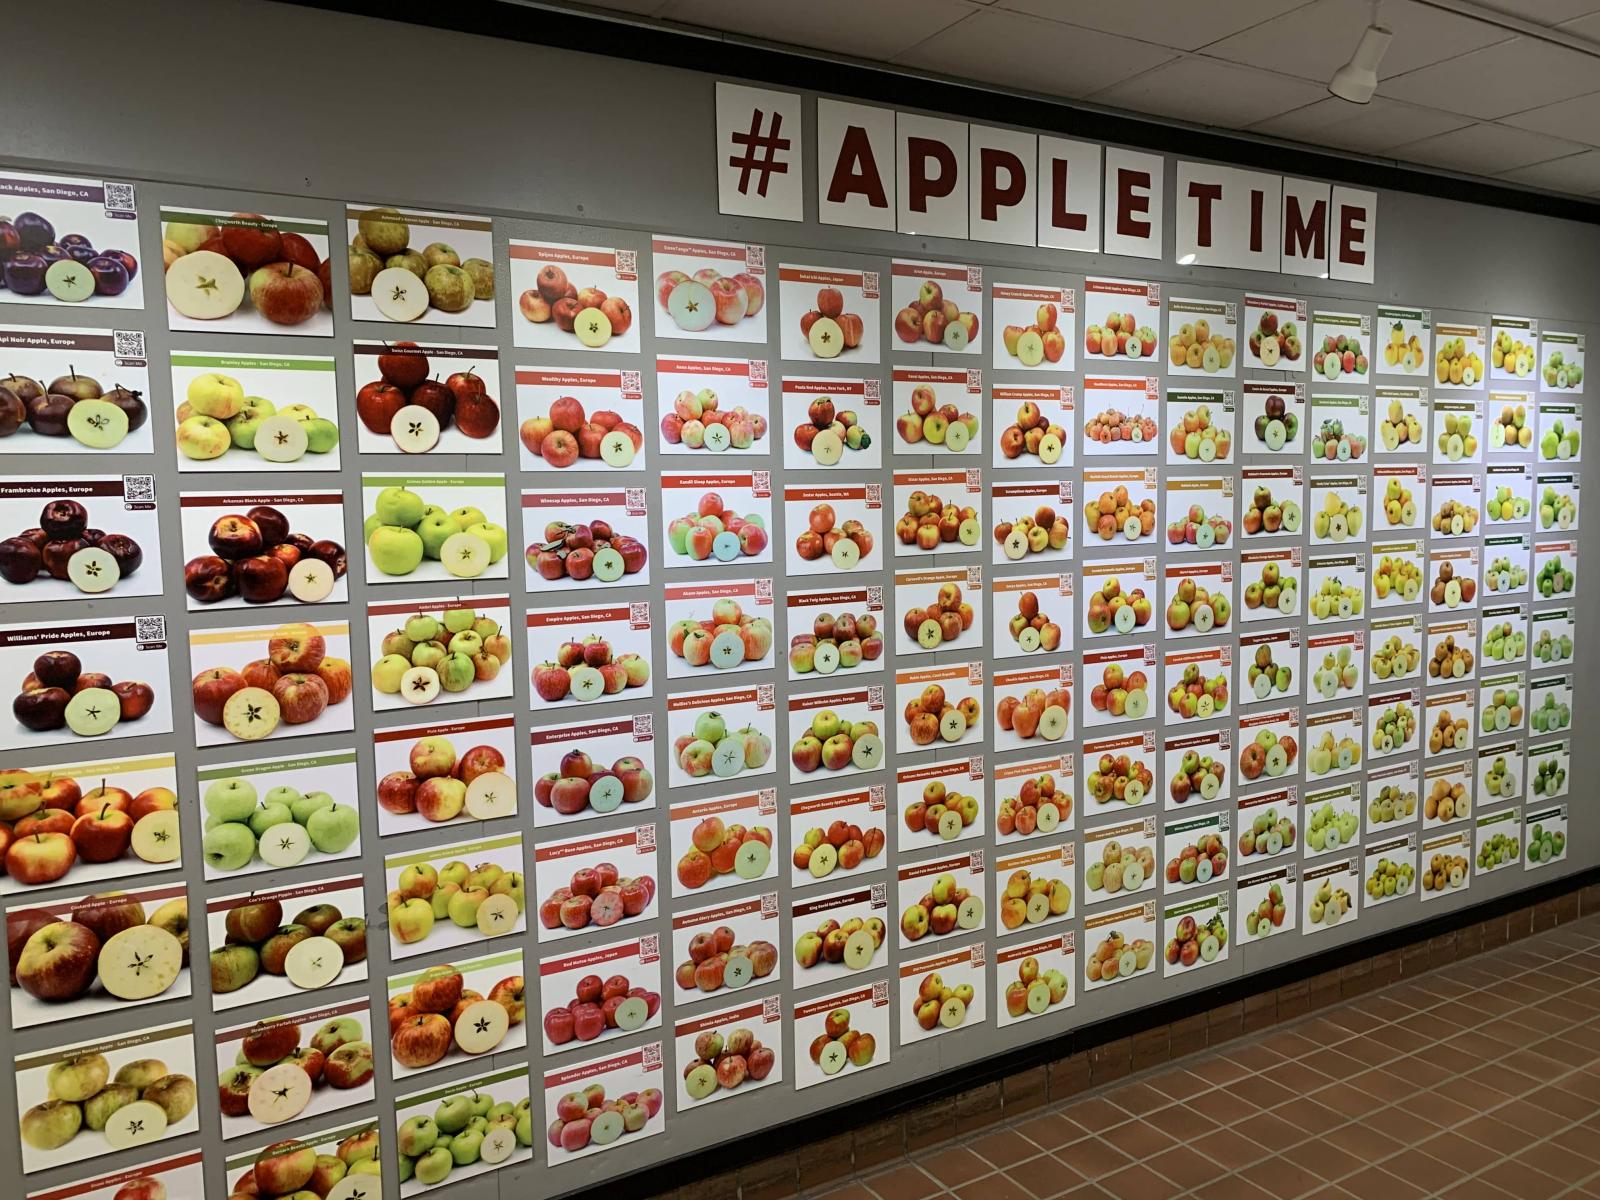 display of various apples